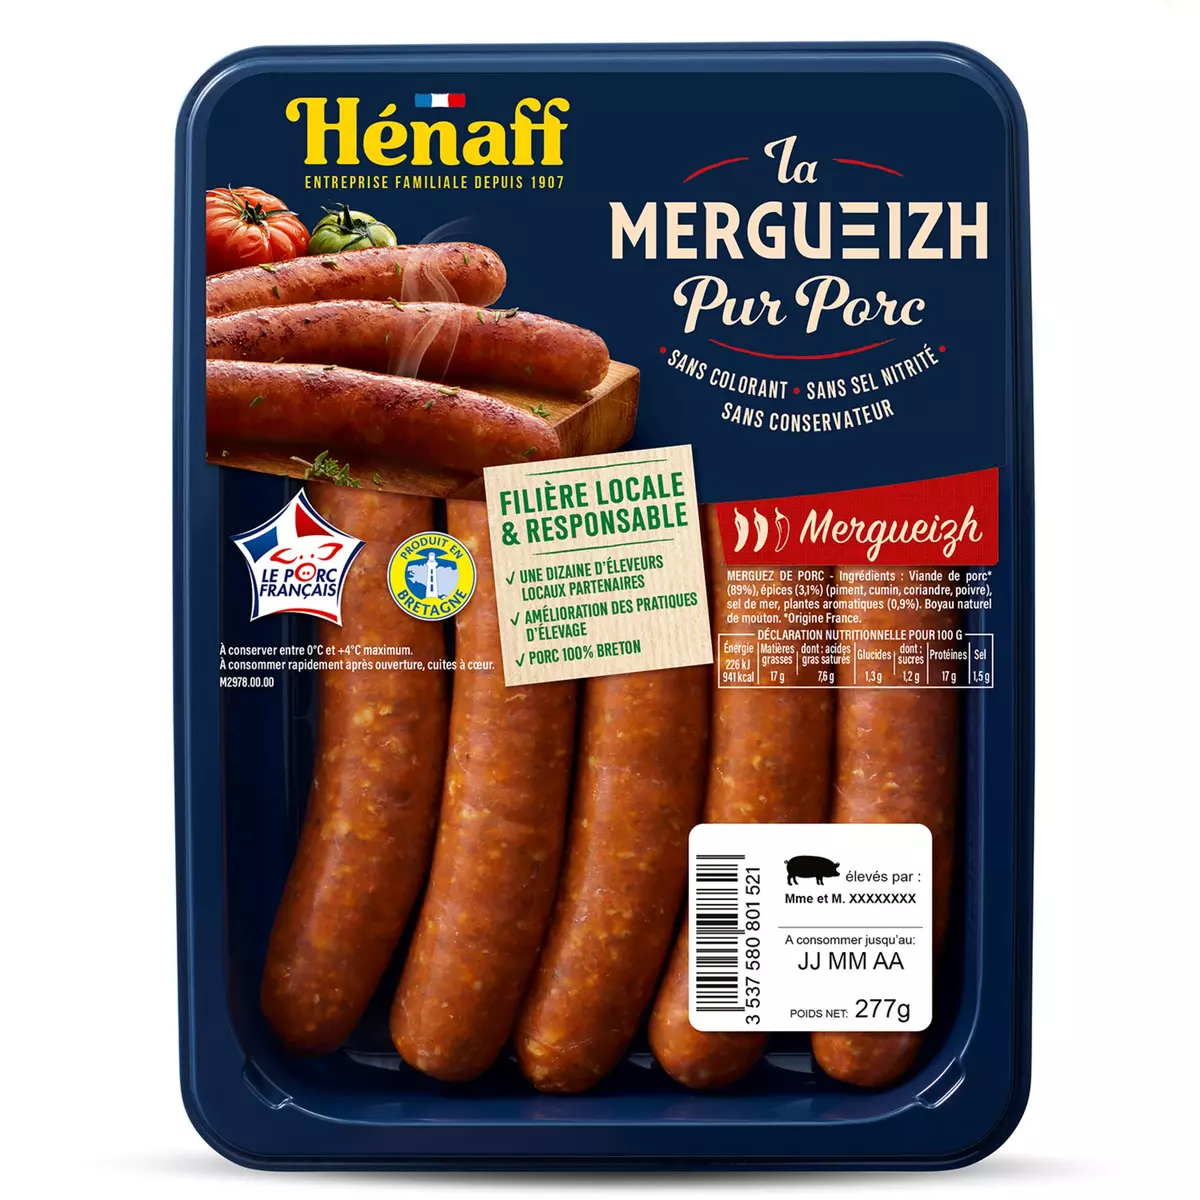 HENAFF Merguez pur porc 5 pièces 277g